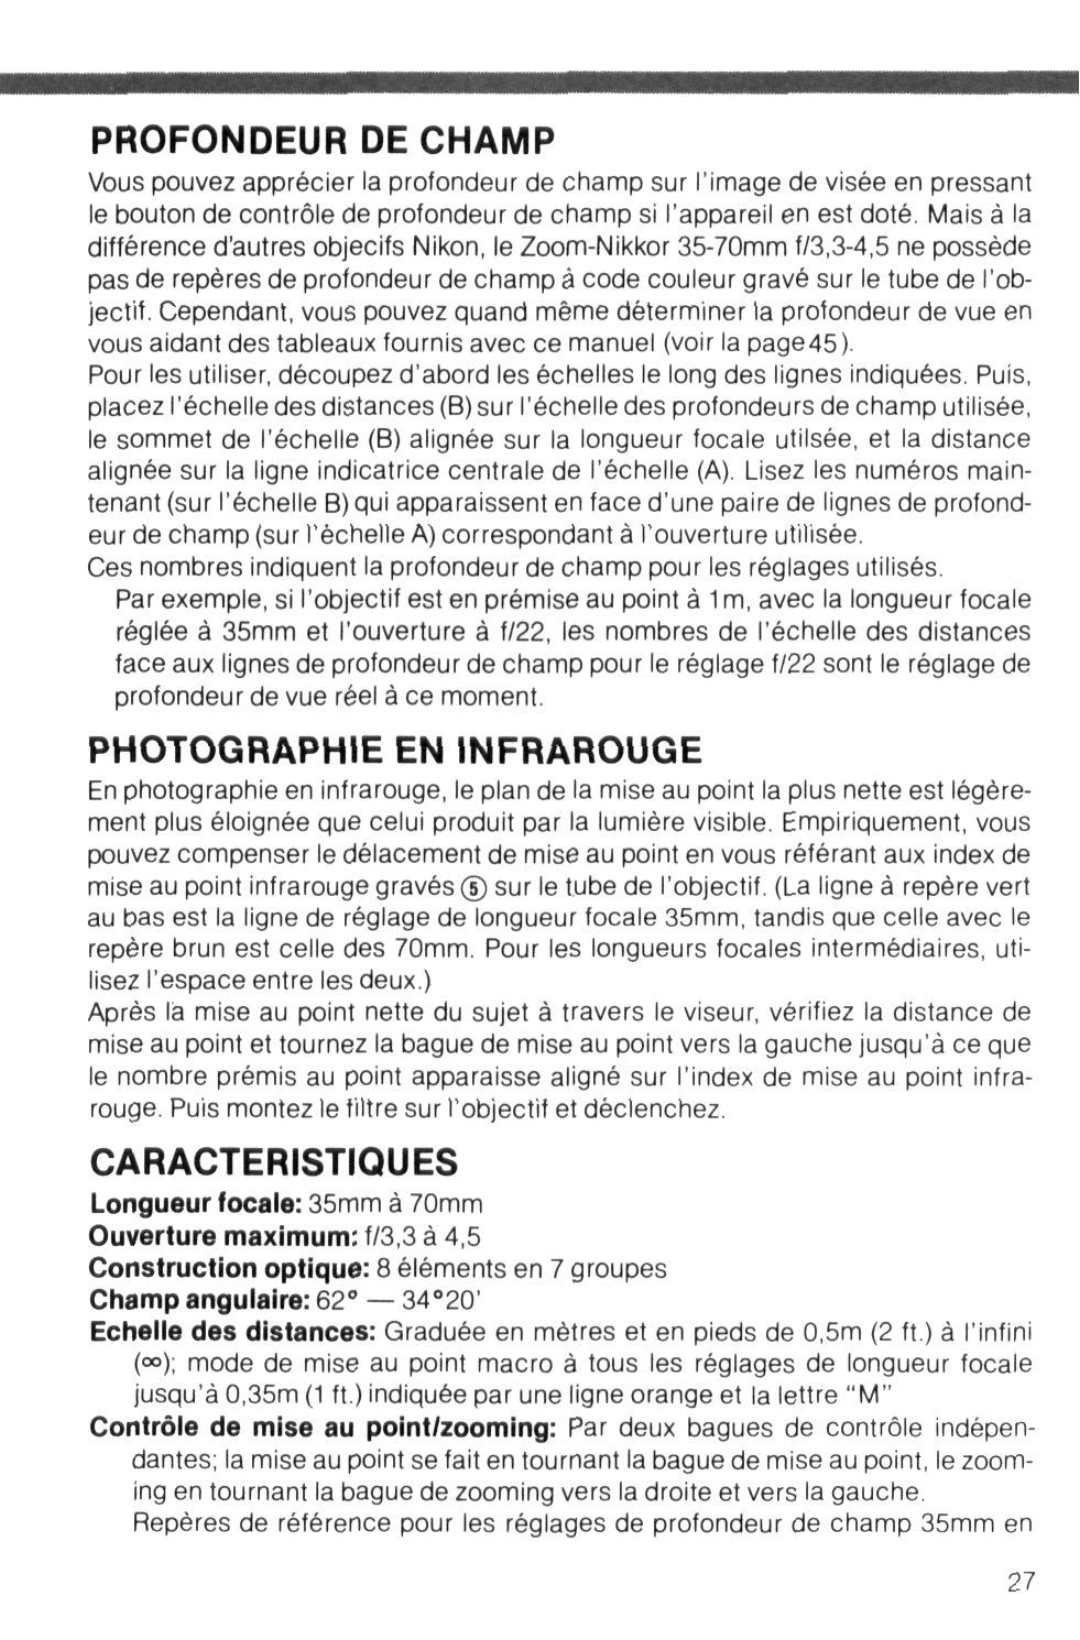 Nikon instruction manual Profondeur De Champ, Caracteristiques, Photographie En Infrarouge, Longueur focale 35mm a 70mm 